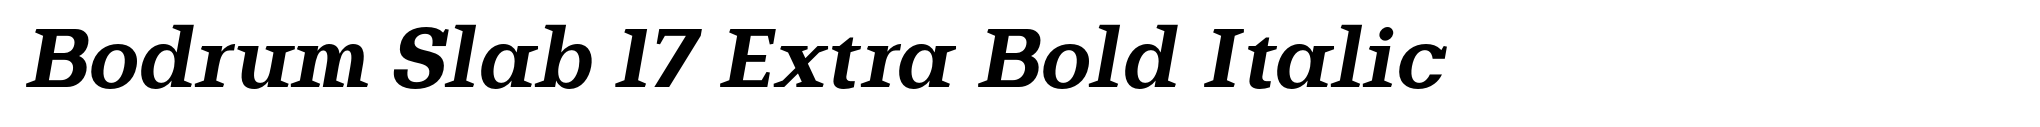 Bodrum Slab 17 Extra Bold Italic image